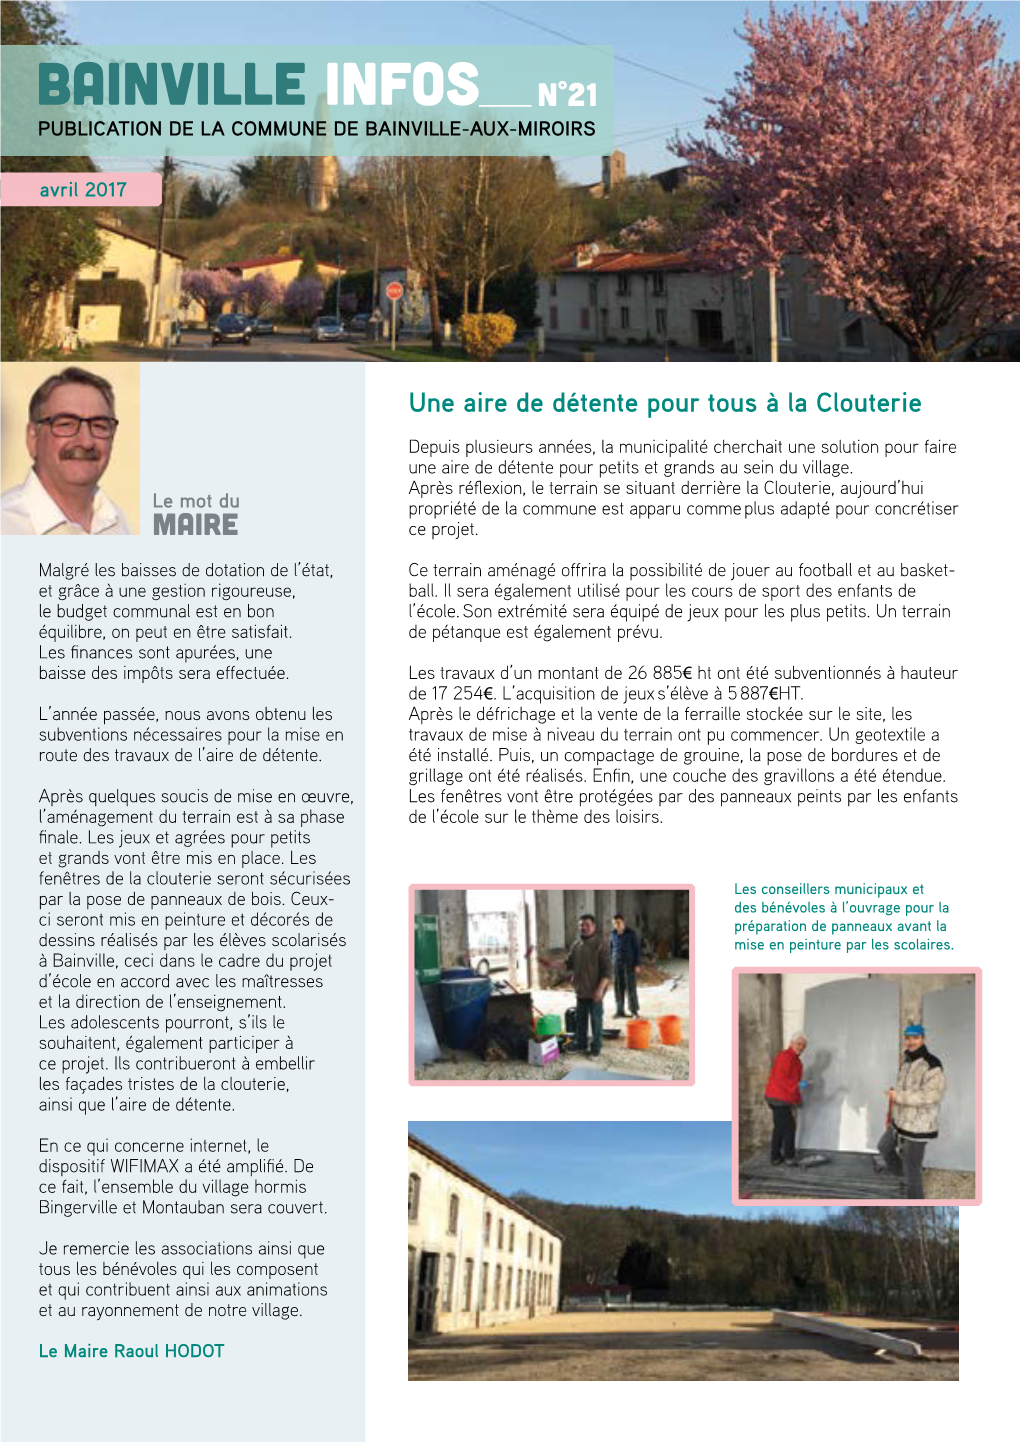 Bainville Infos N°21 Publication De La Commune De Bainville-Aux-Miroirs